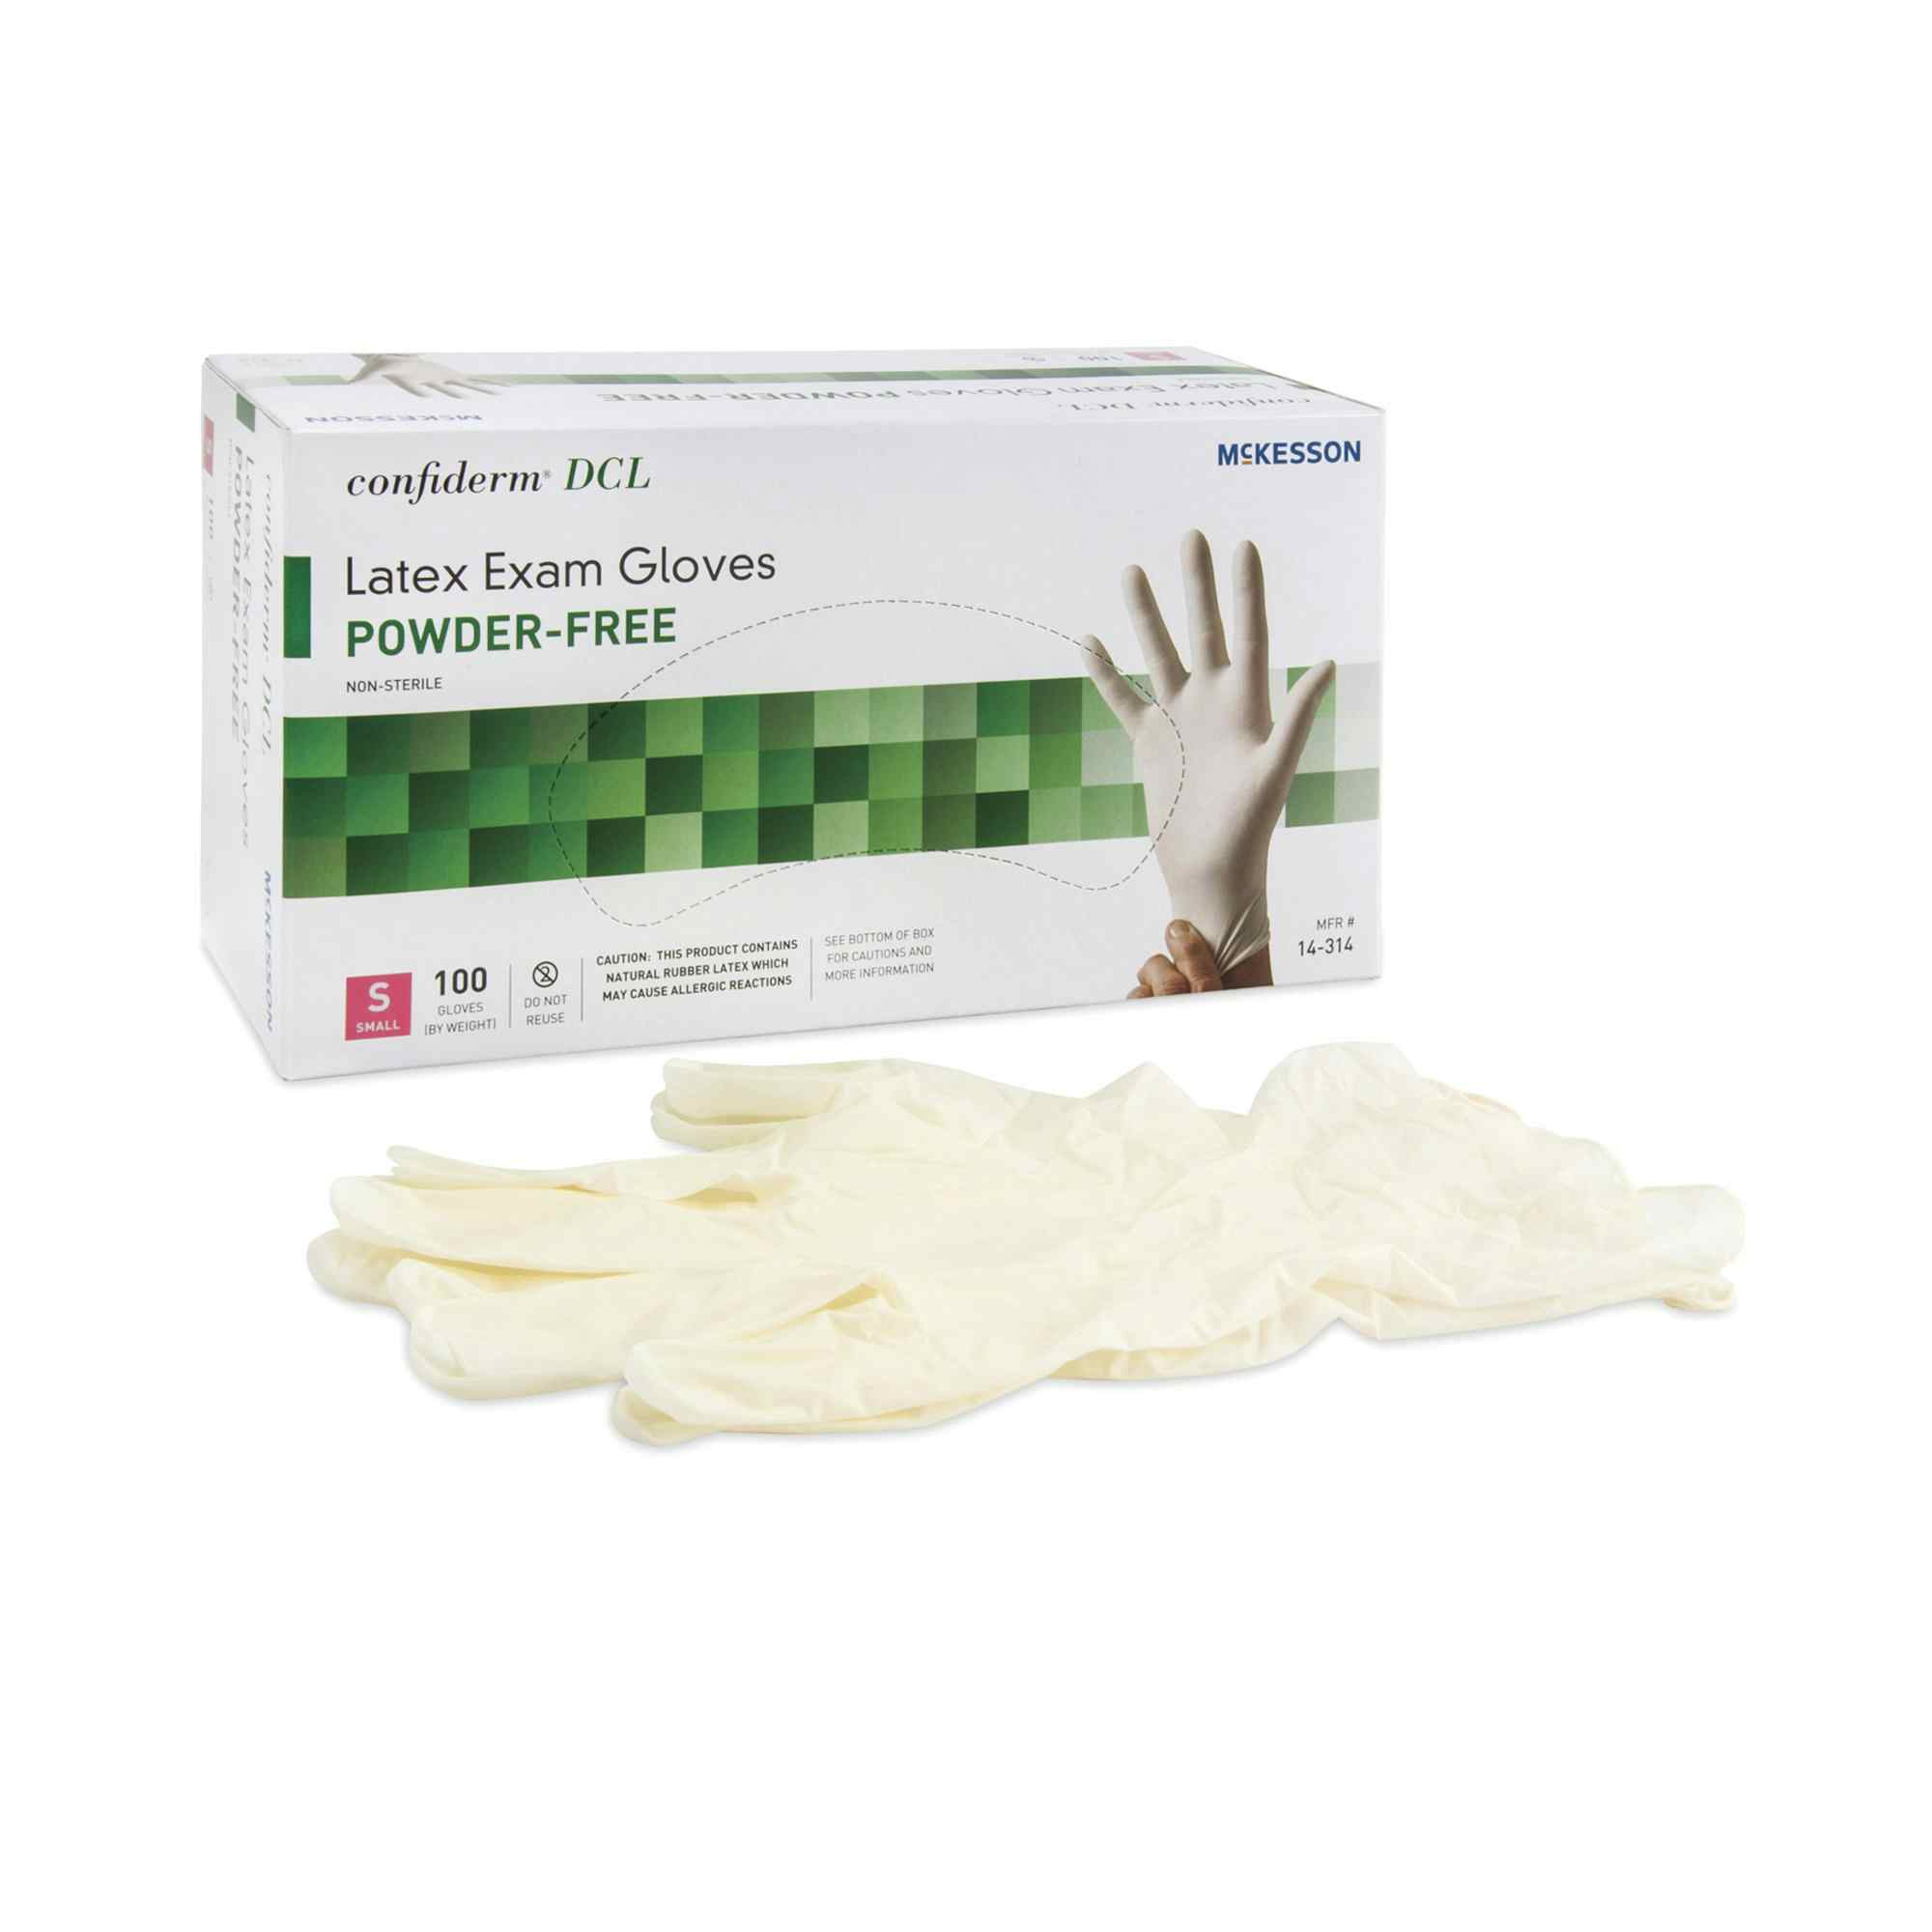 McKesson Confiderm DCL Latex Exam Gloves, Powder Free, 14-314, Small - Box of 100